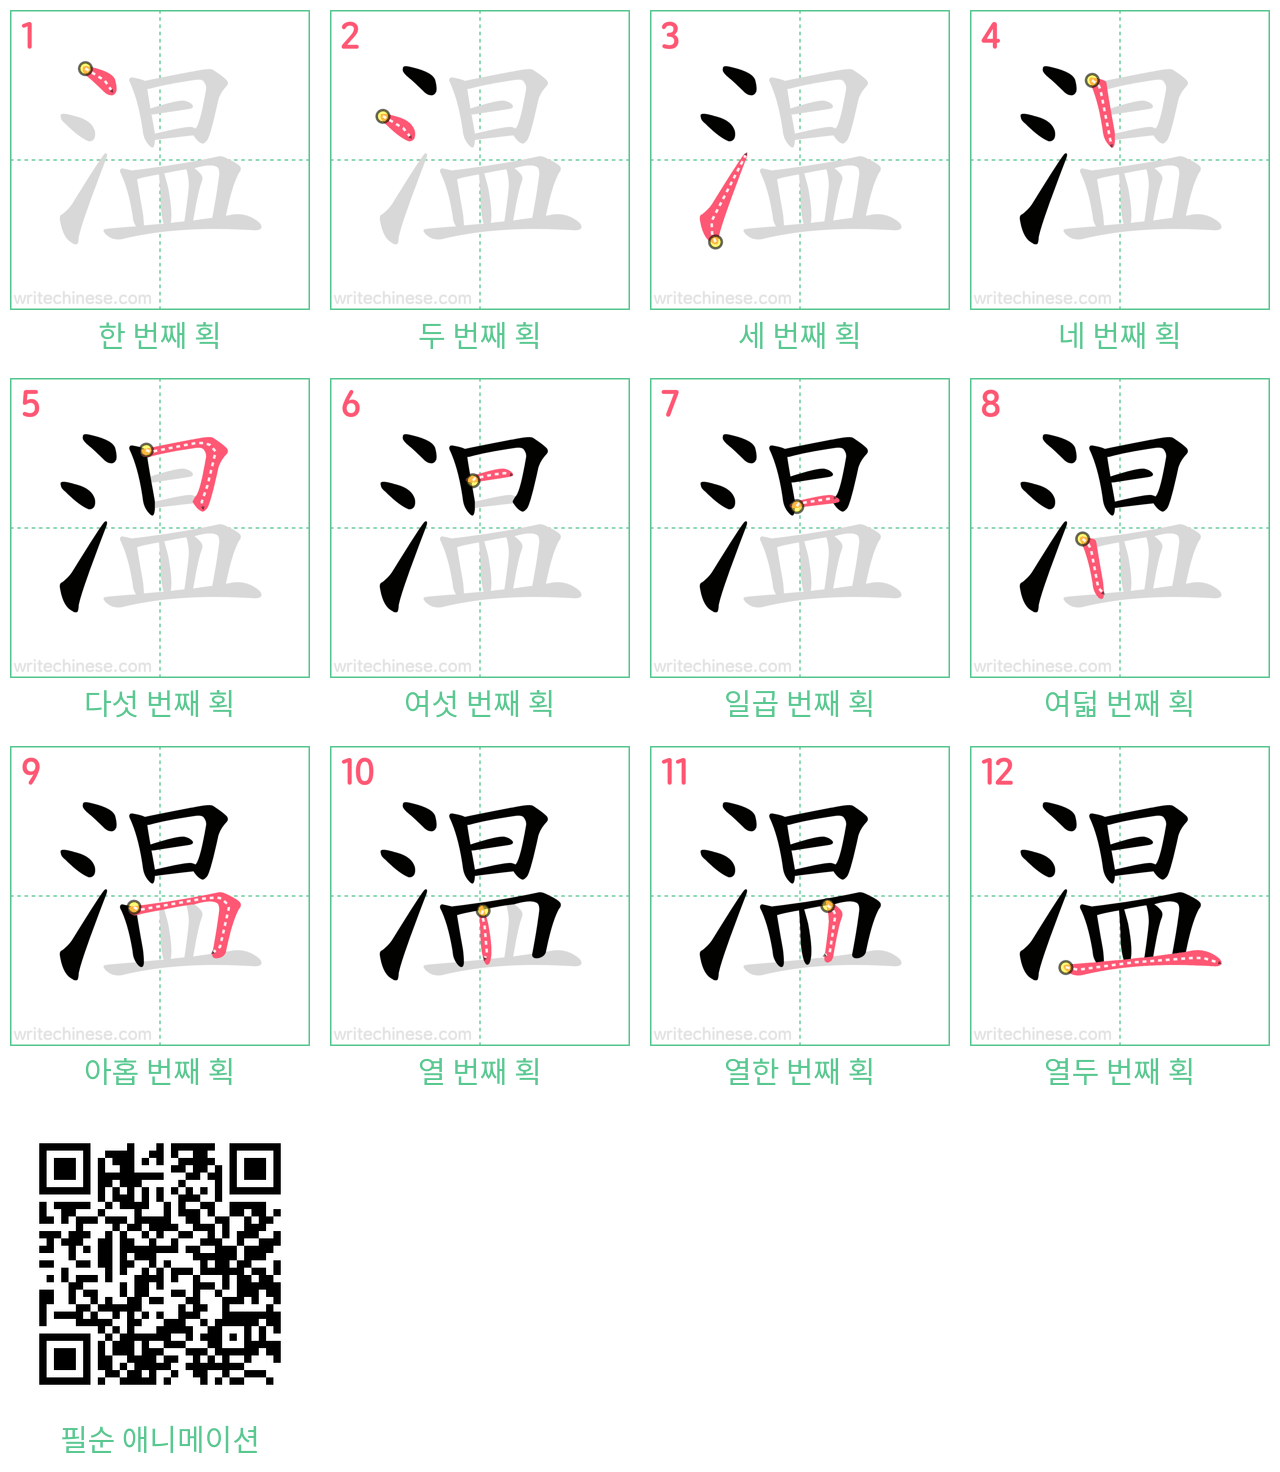 温 step-by-step stroke order diagrams